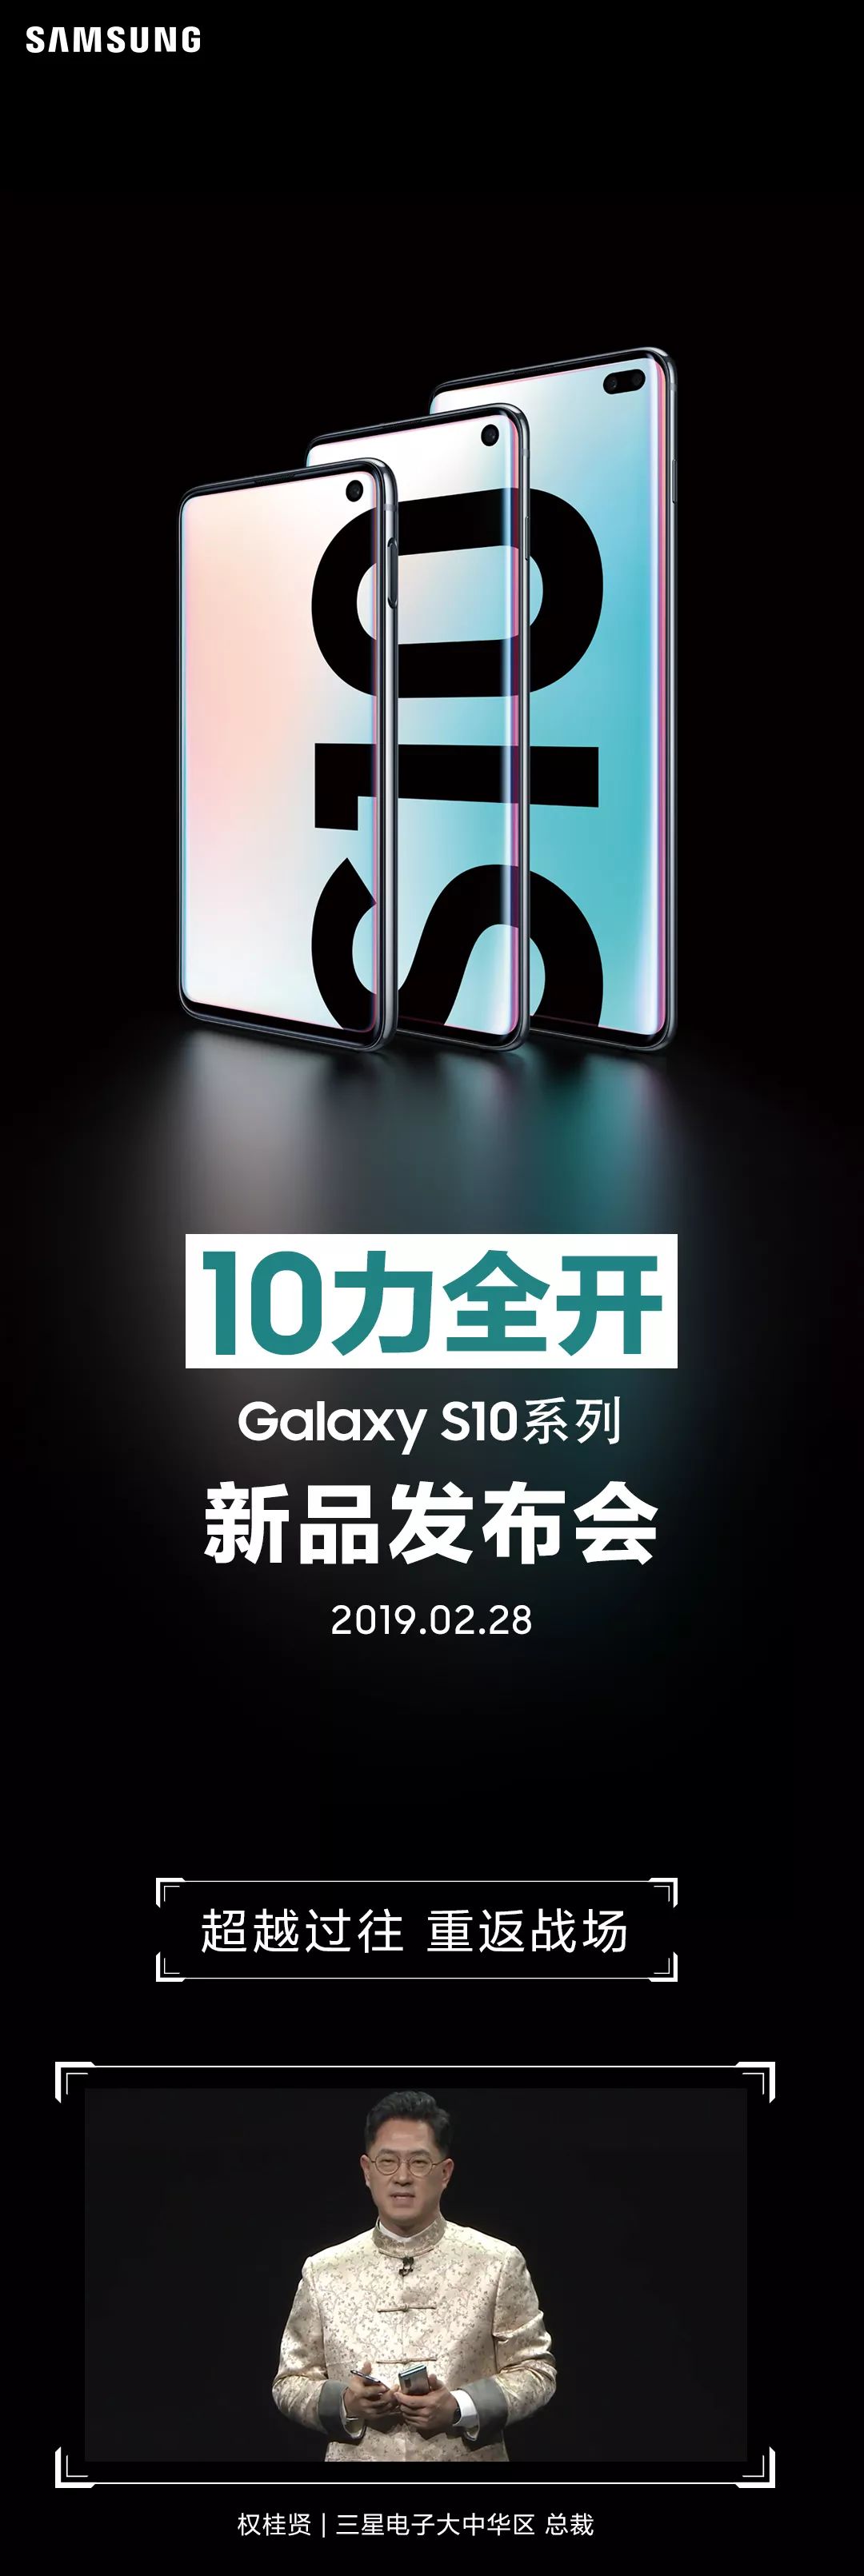 Galaxy S10系列發布會，10力全開，預售開啟 科技 第1張